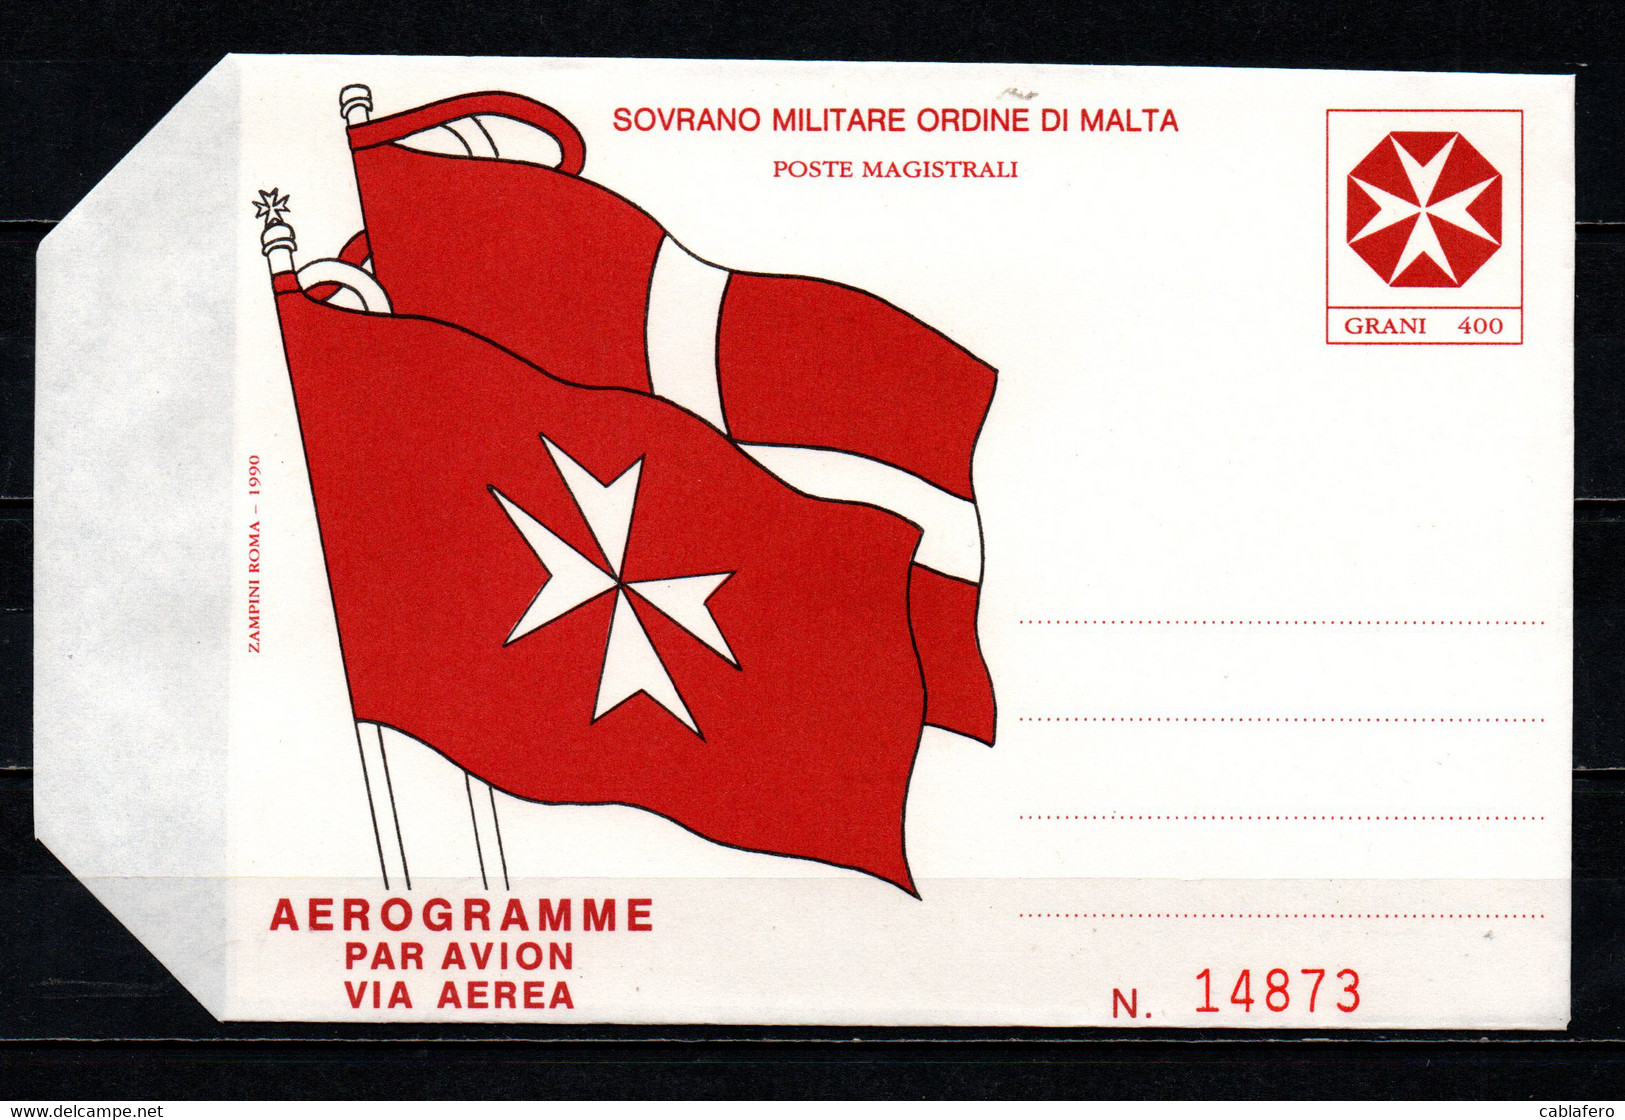 SMOM - 1990 - CROCE DI MALTA - AEROGRAMMA - NUOVO - Sovrano Militare Ordine Di Malta